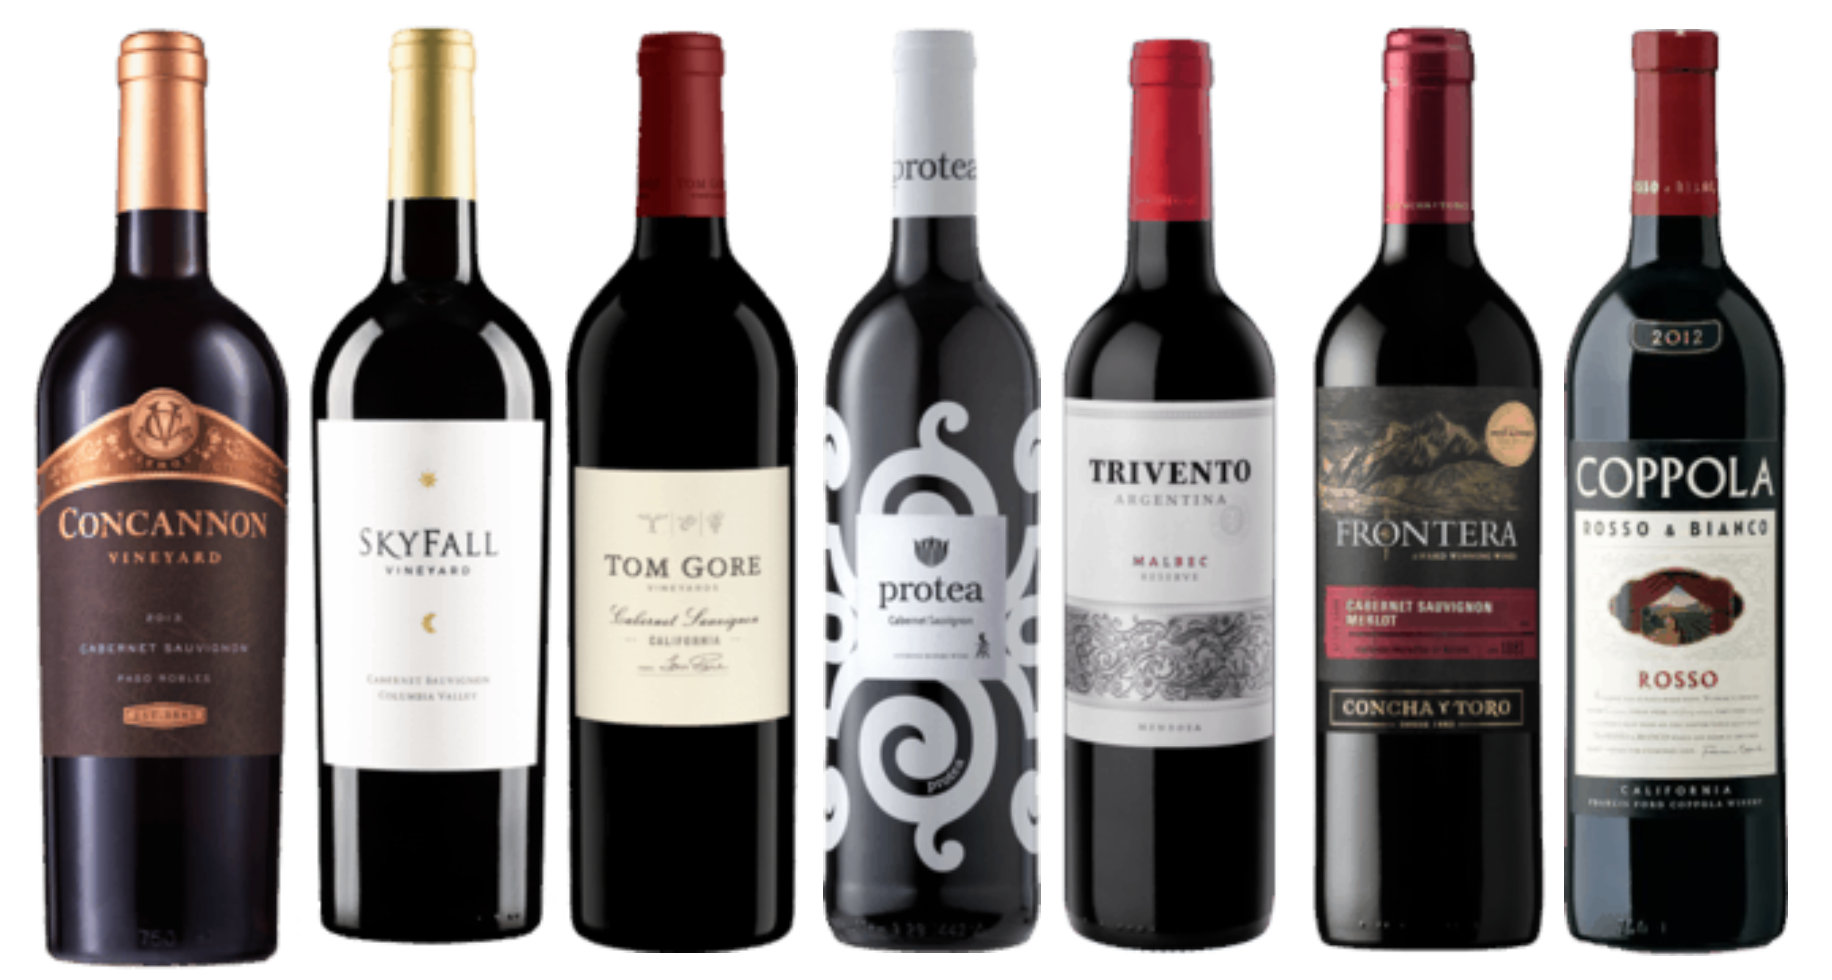 Concannon, SkyFall, Tom Gore, Protea, Trivento, Frontera, Coppola red wines in a row